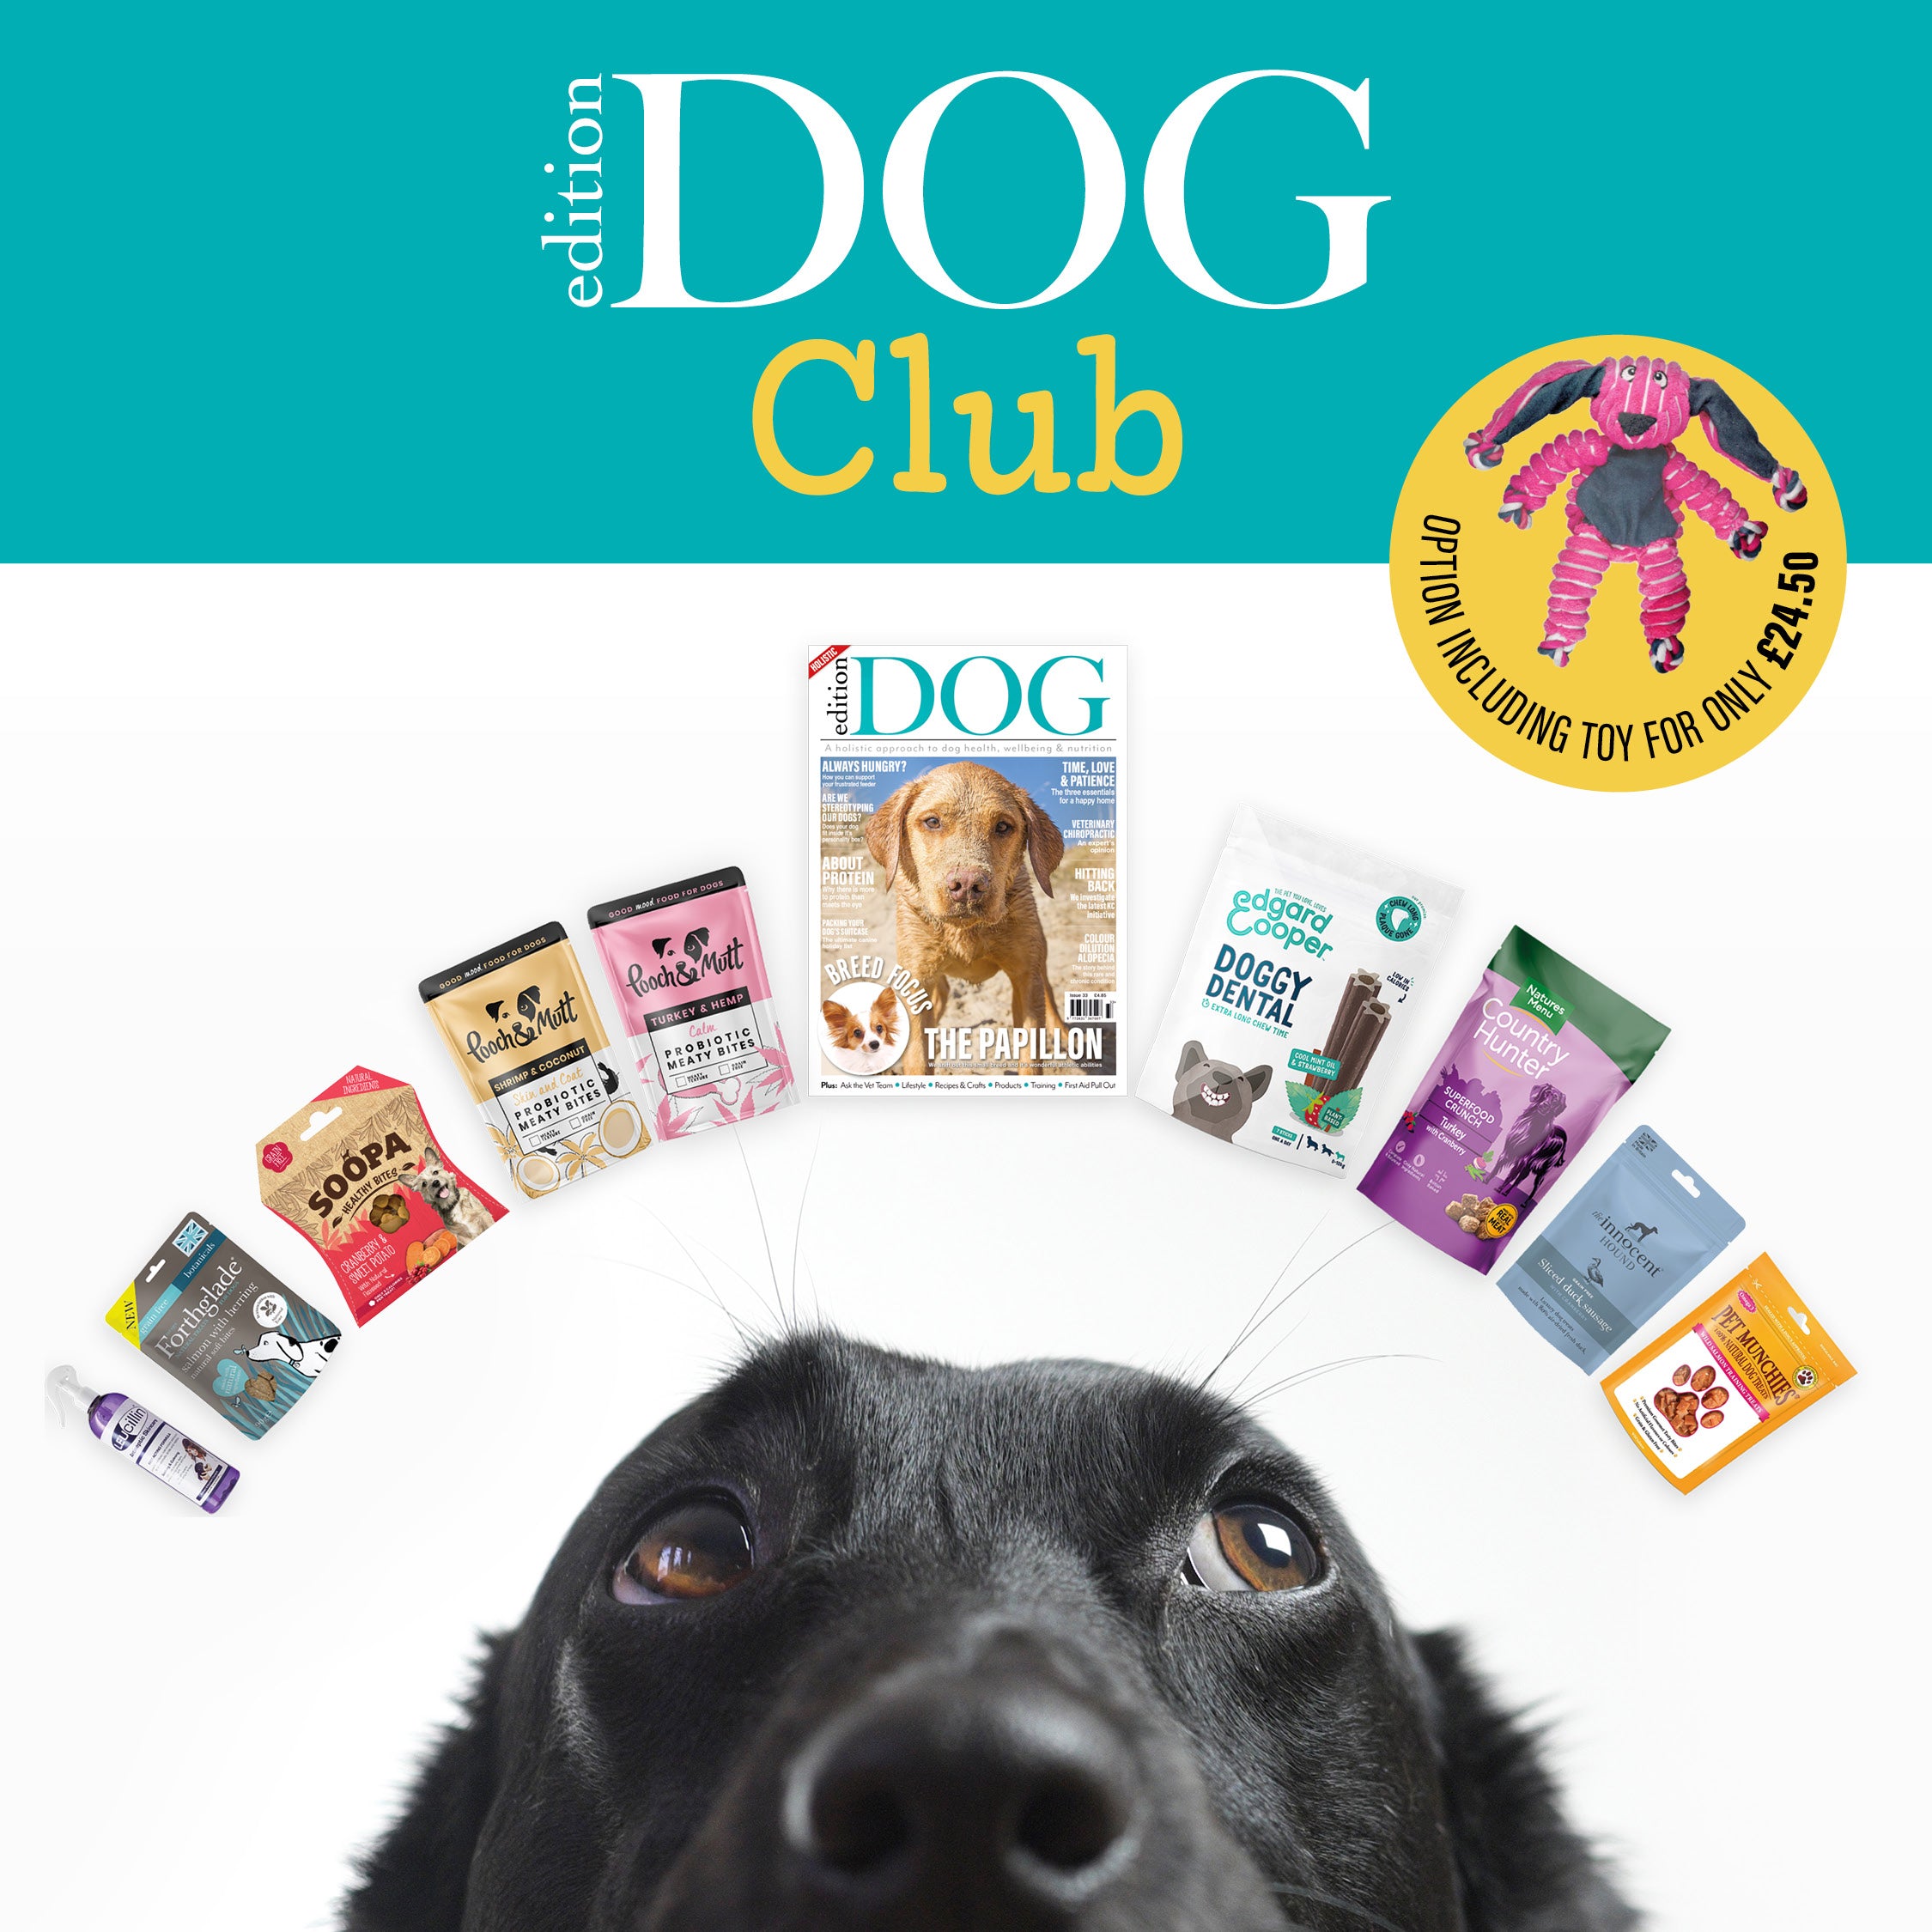 Edition Dog Club